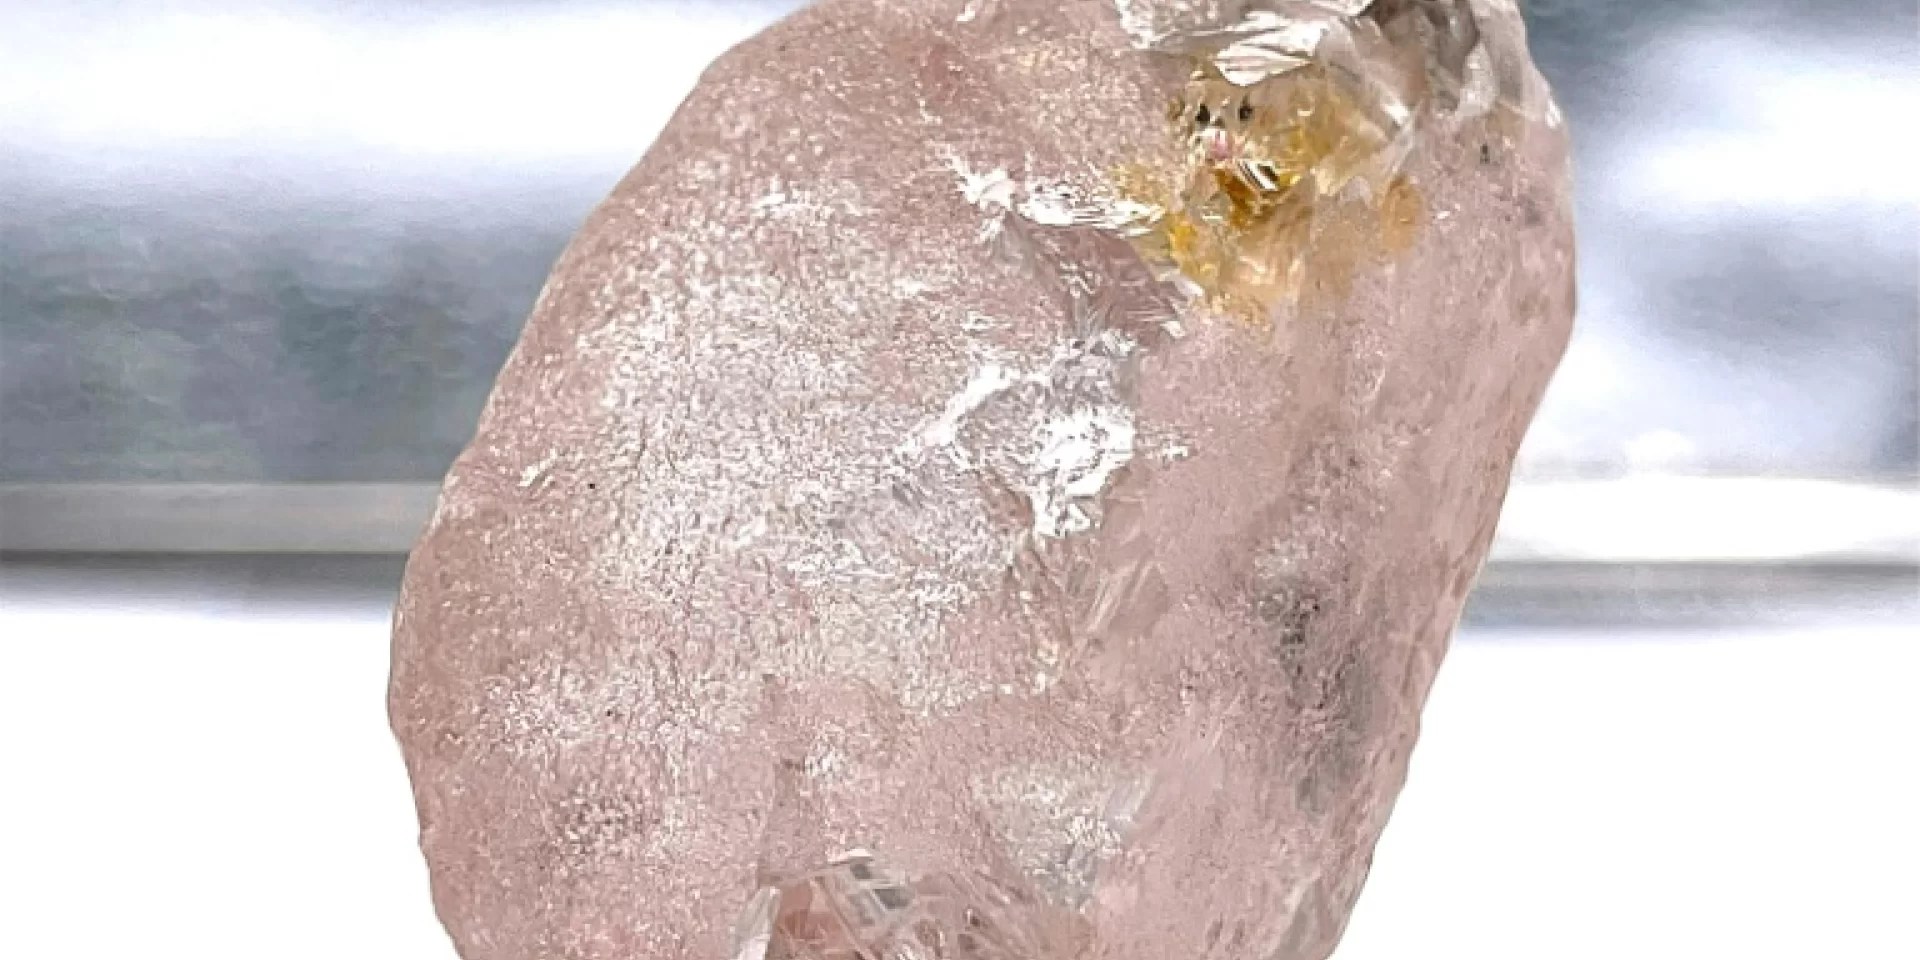 Hallan en Angola uno de los mayores diamantes rosas de los últimos 300 años